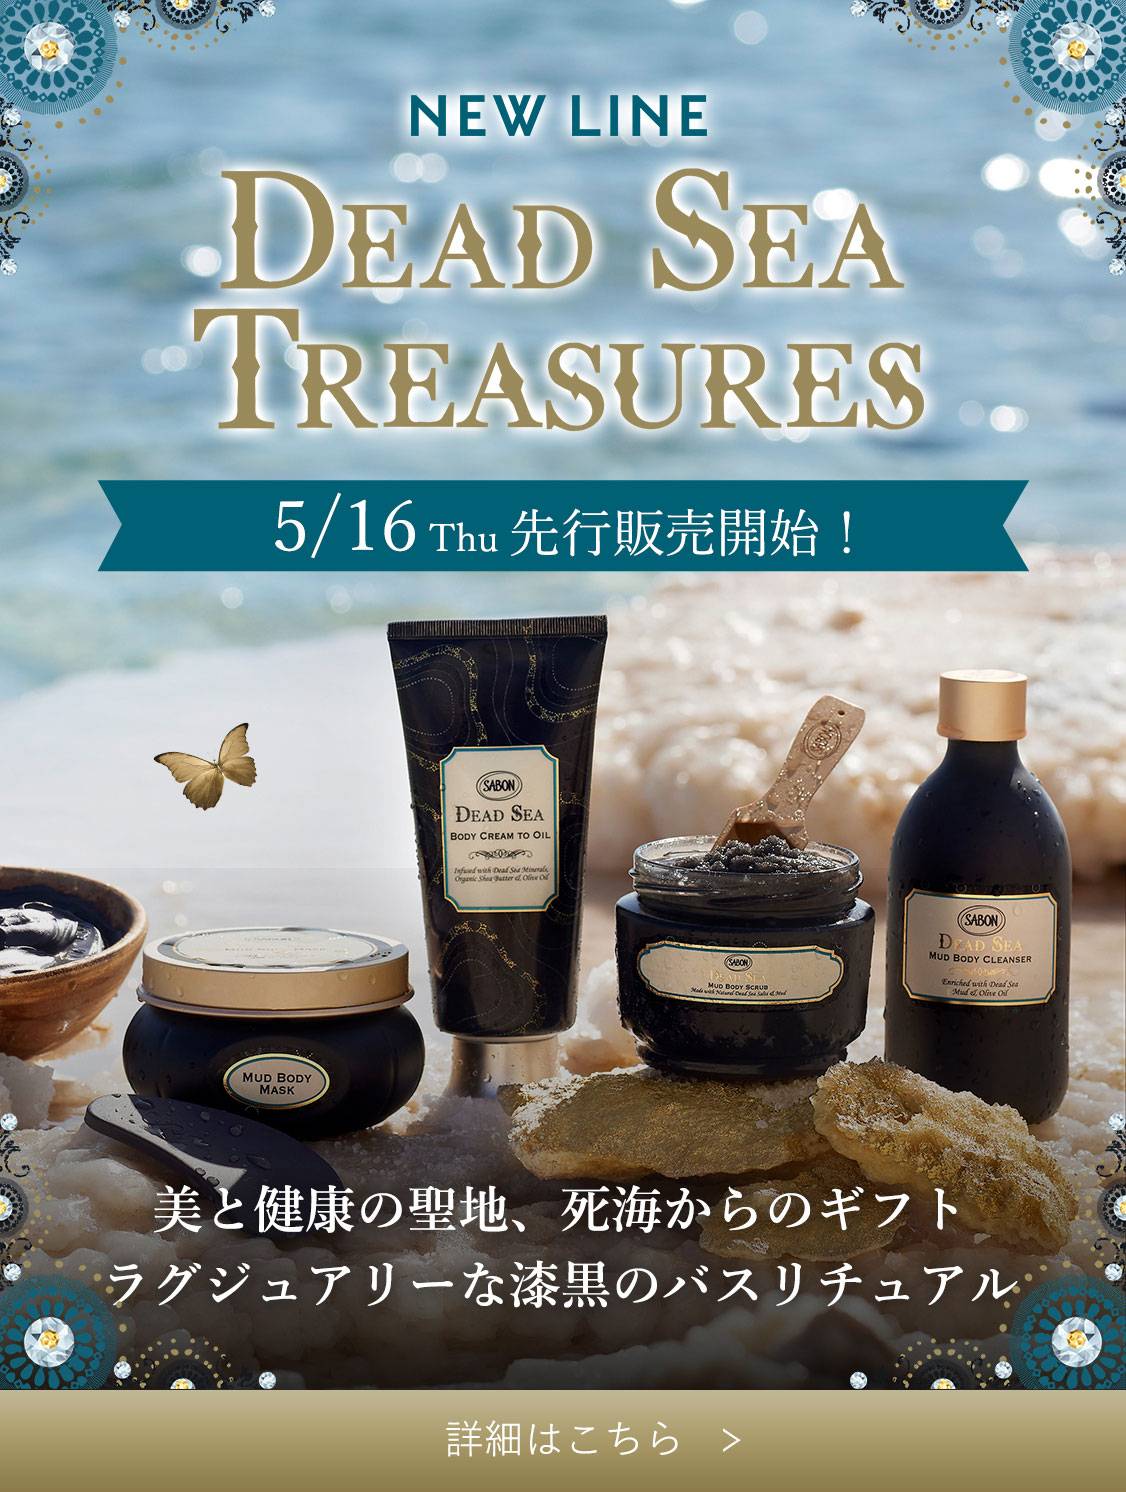 NEW LIFE DEAD SEA TREASURES 5/16 Thu 先行販売開始！ 美と健康の聖地、死海からのギフト<br>ラグジュアリーな漆黒のバスリチュアル